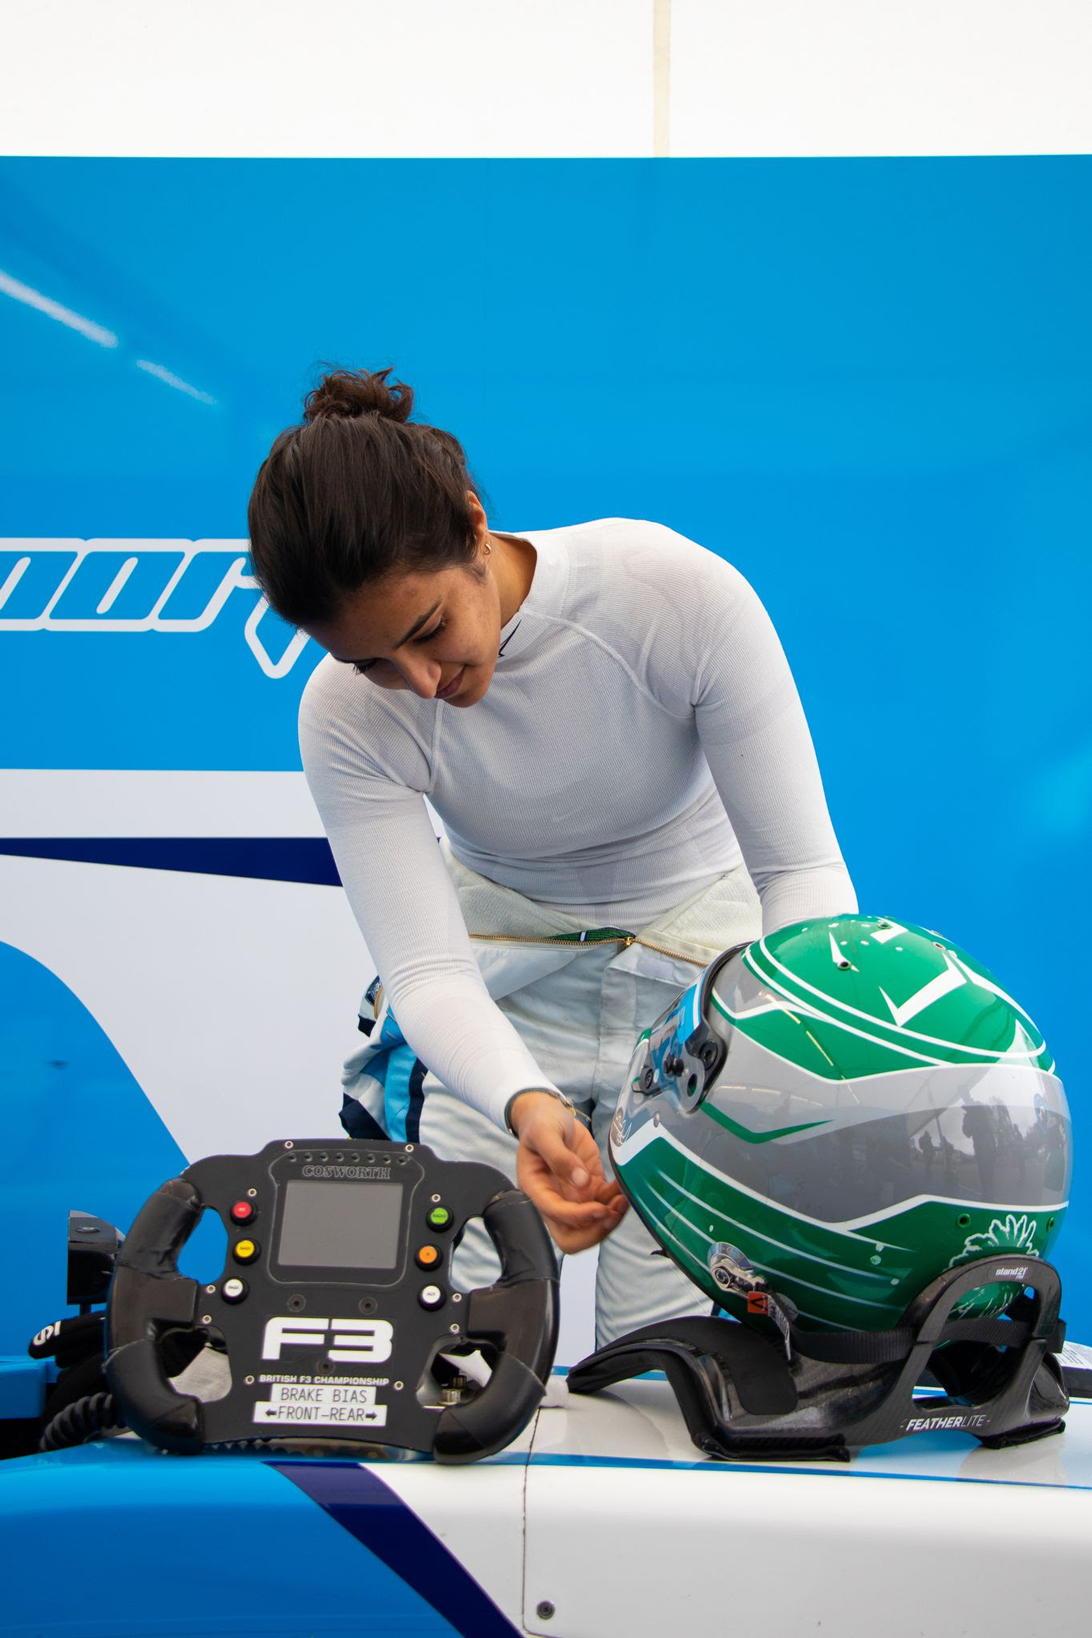 ريما الجفالي أول سائقة سباقات سعودية فى بطولة السيارات أحادية المقعد